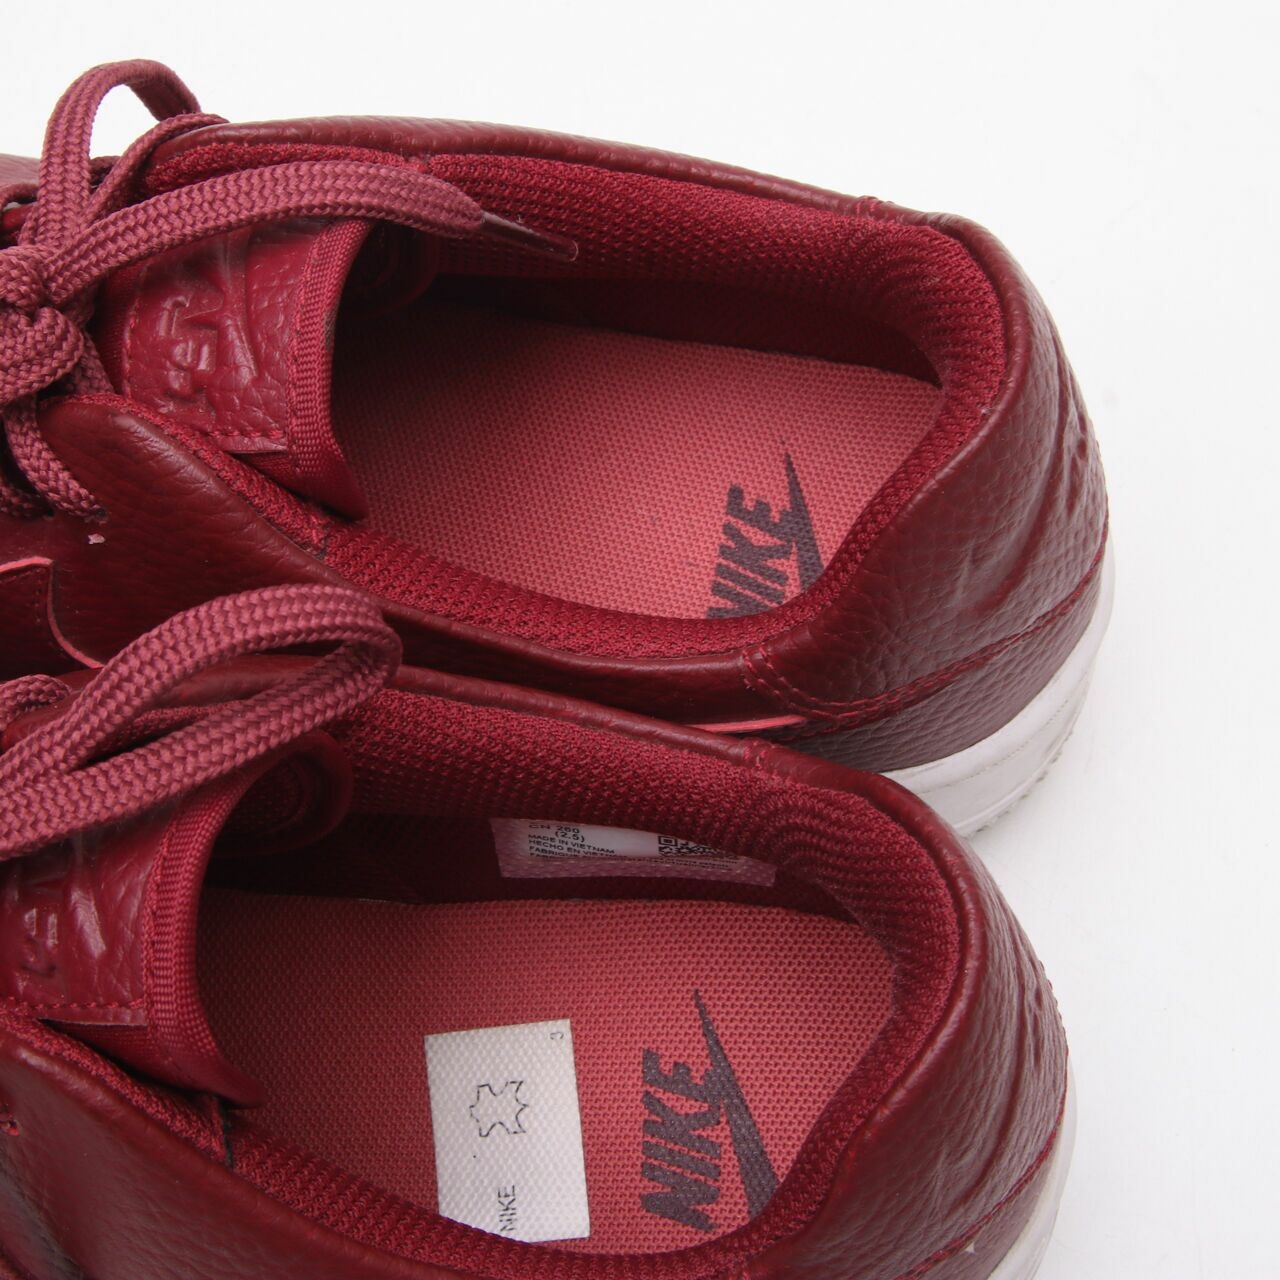 Nike Maroon Leather Sneakers